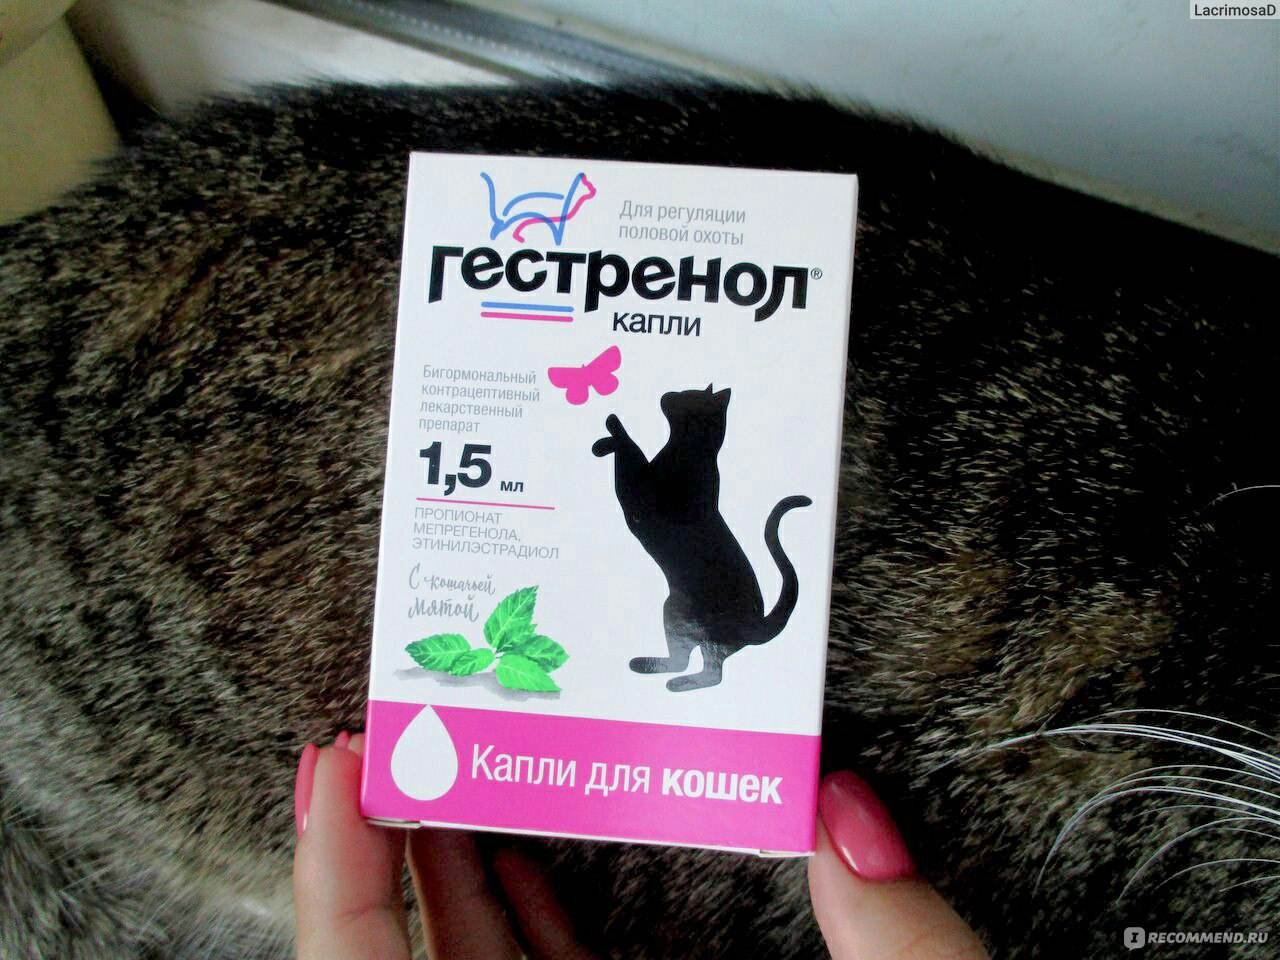 Гестренол контрацептив для кошек, капли 1,5 мл. купить в интернет-зоомагазине хвоост от 235 руб.